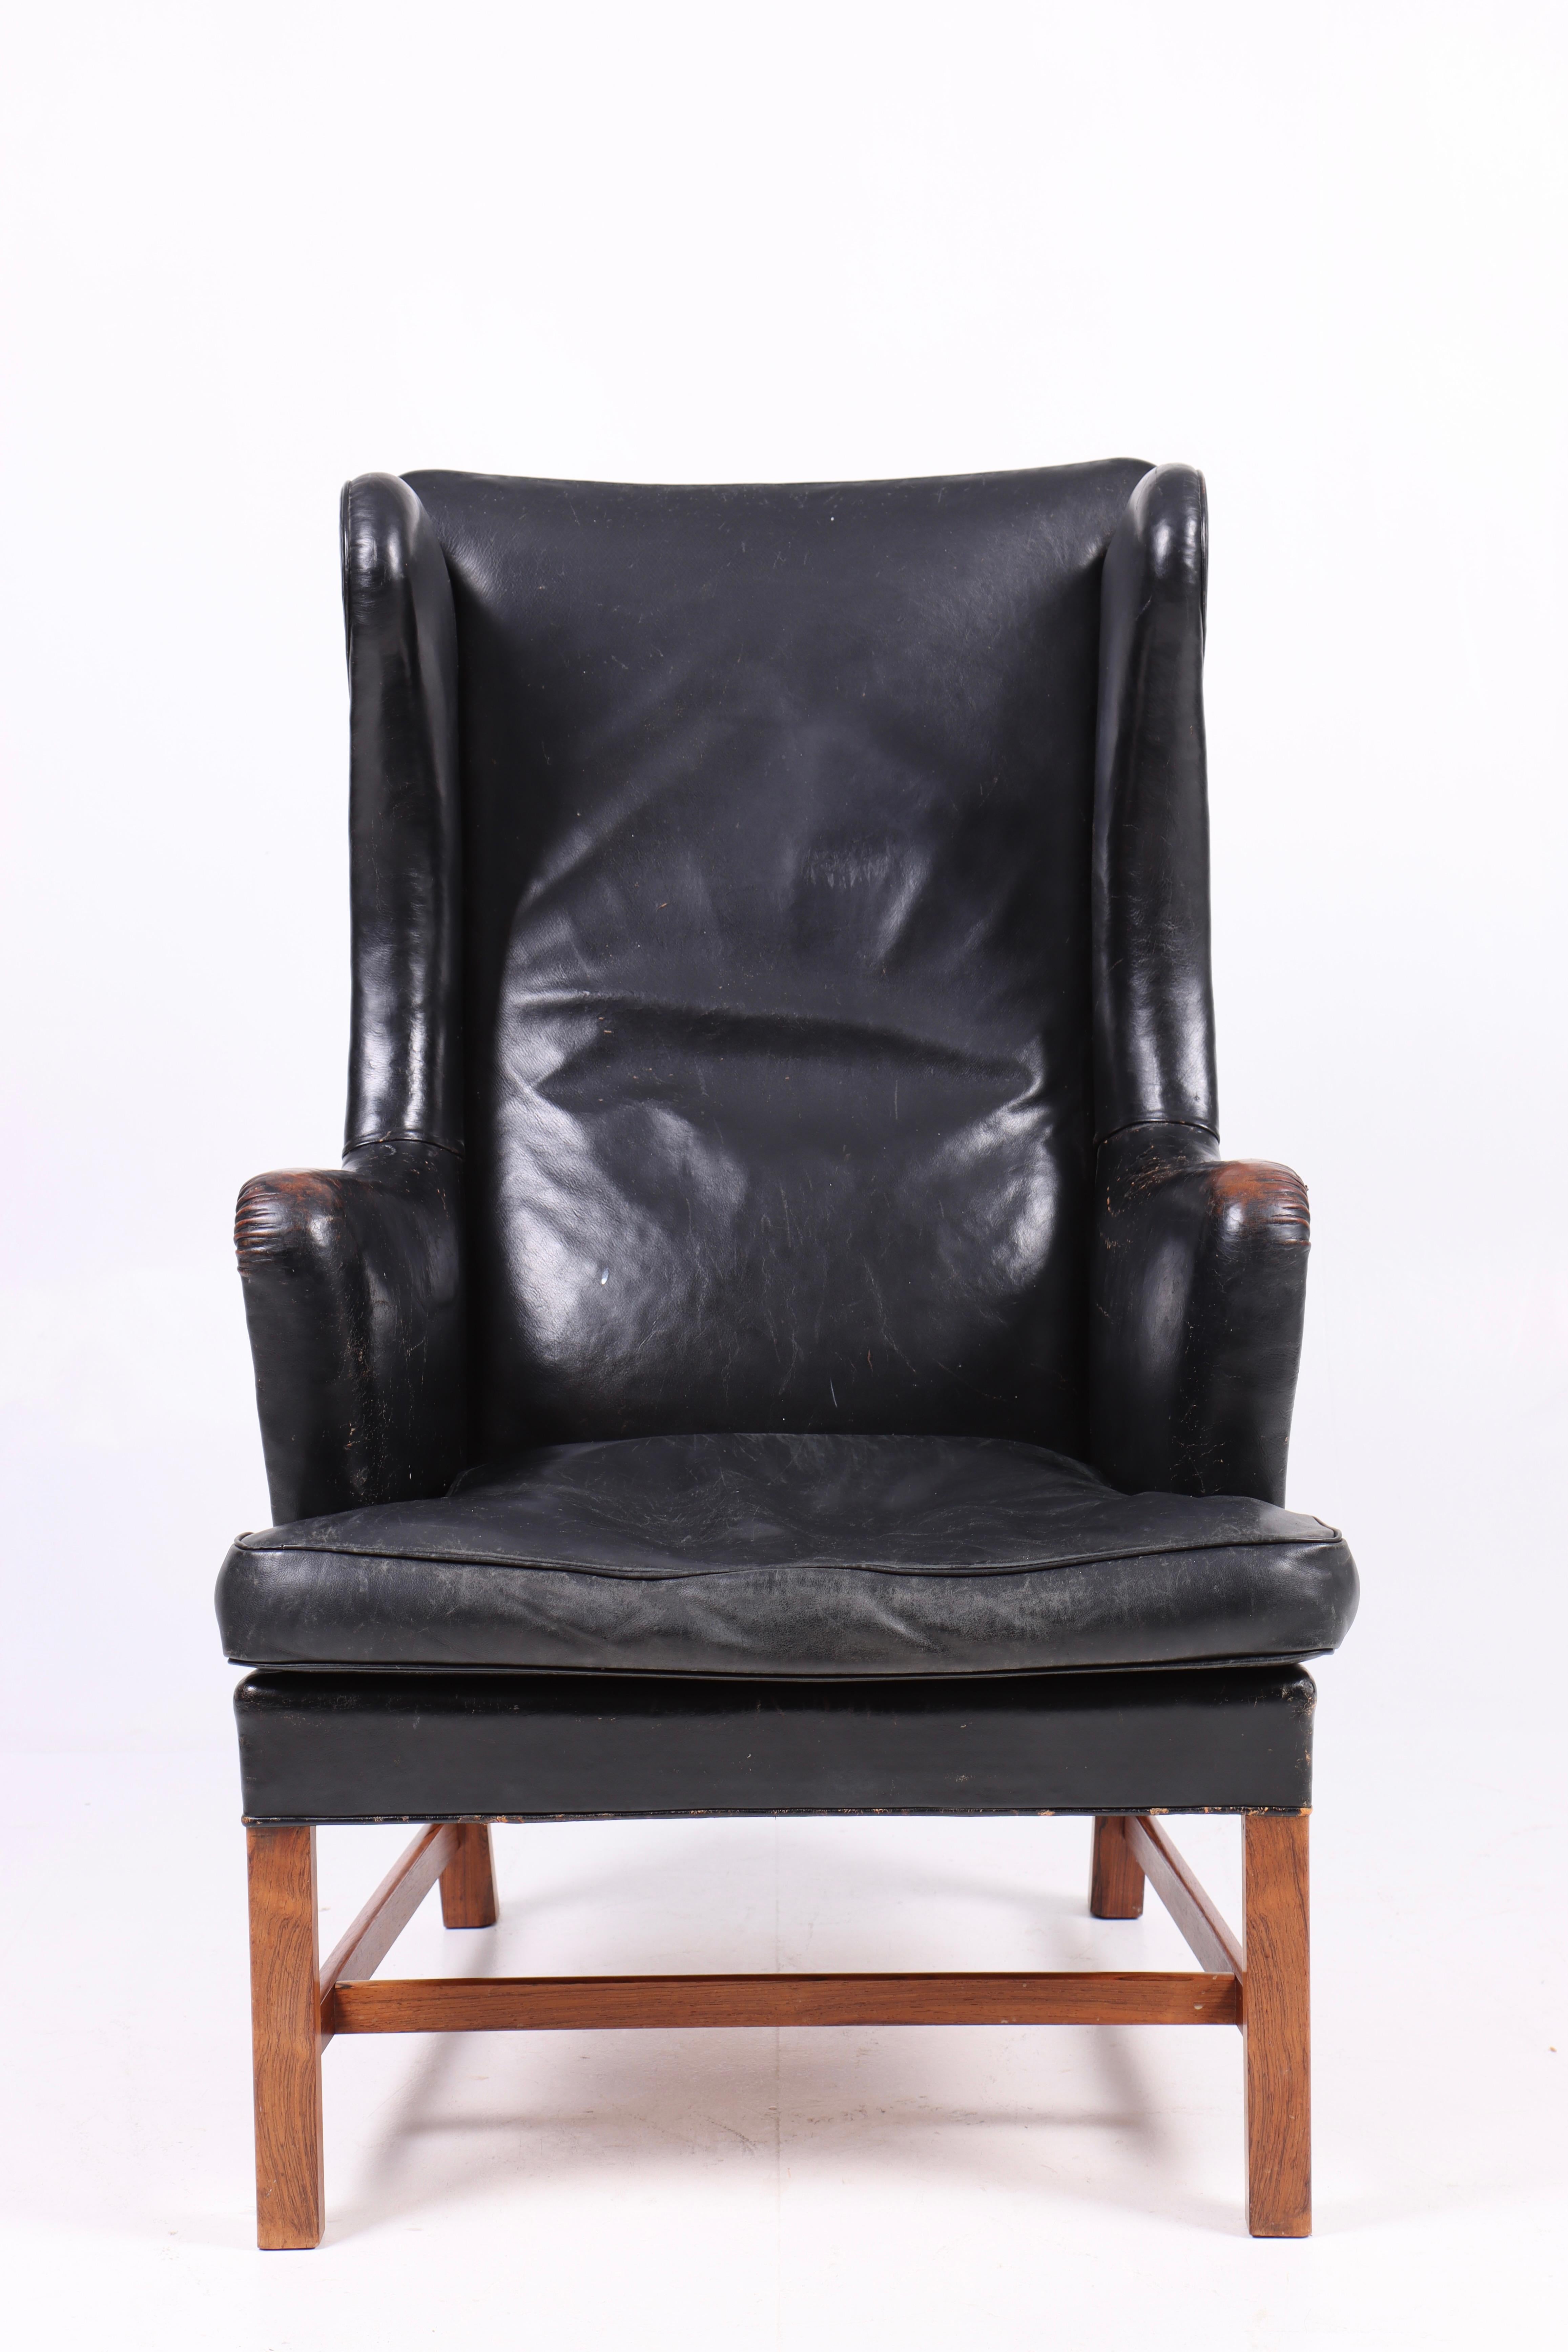 Superbe fauteuil à oreilles en cuir noir patiné, conçu par Kaare Klint pour Rud Rasmussen en 1946, modèle 5313. Fabriqué au Danemark. Etat original.